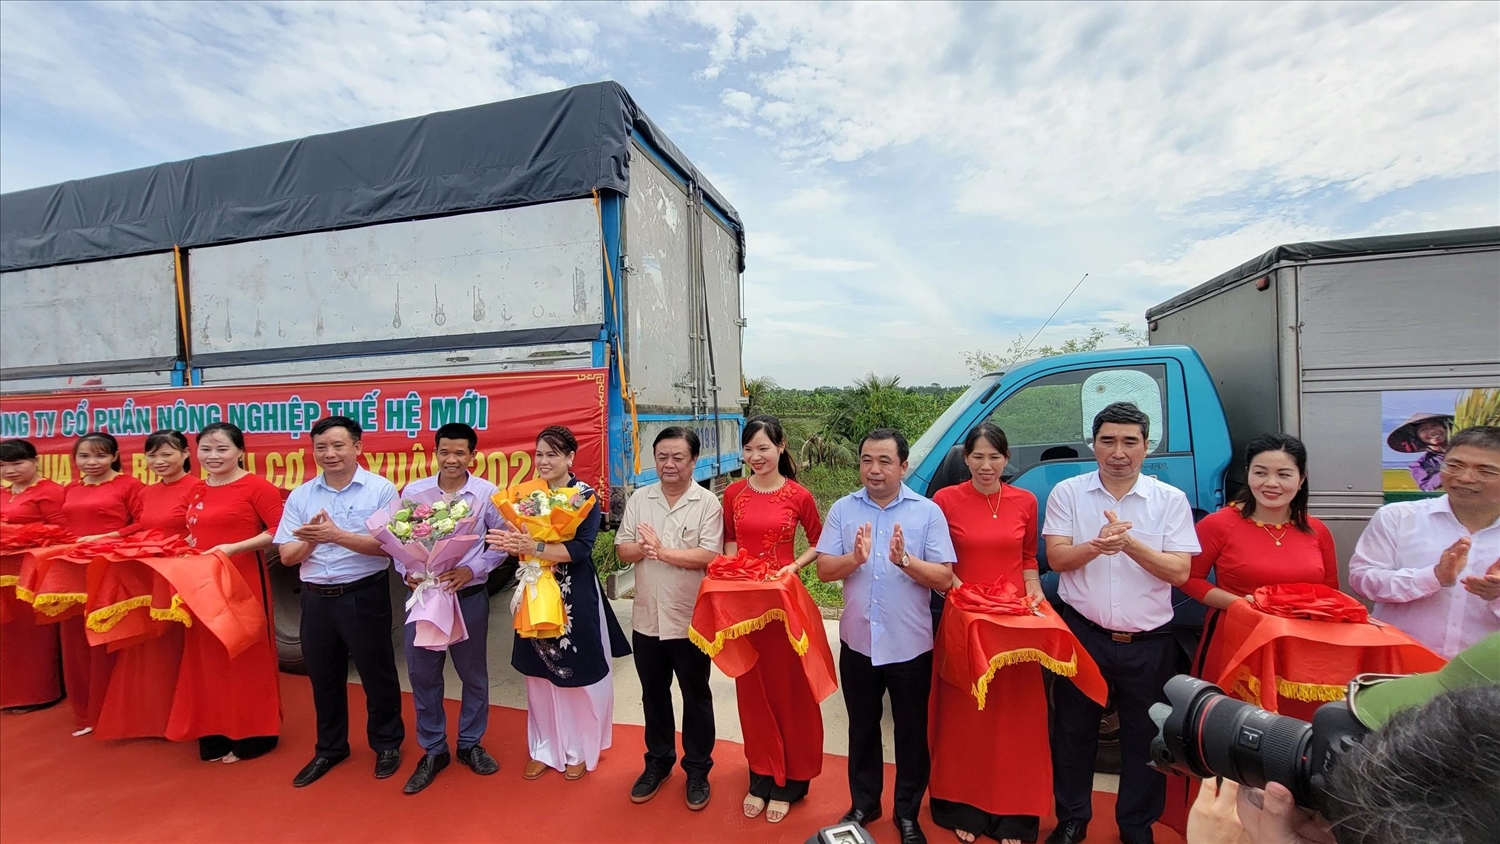 Bộ trưởng Bộ Nông nghiệp và Phát triển nông thôn Lê Minh Hoan cùng lãnh đạo tỉnh Hải Dương cắt băng, tặng hoa cho đại diện doanh nghiệp thu mua xuất bán chuyến hàng đầu tiên